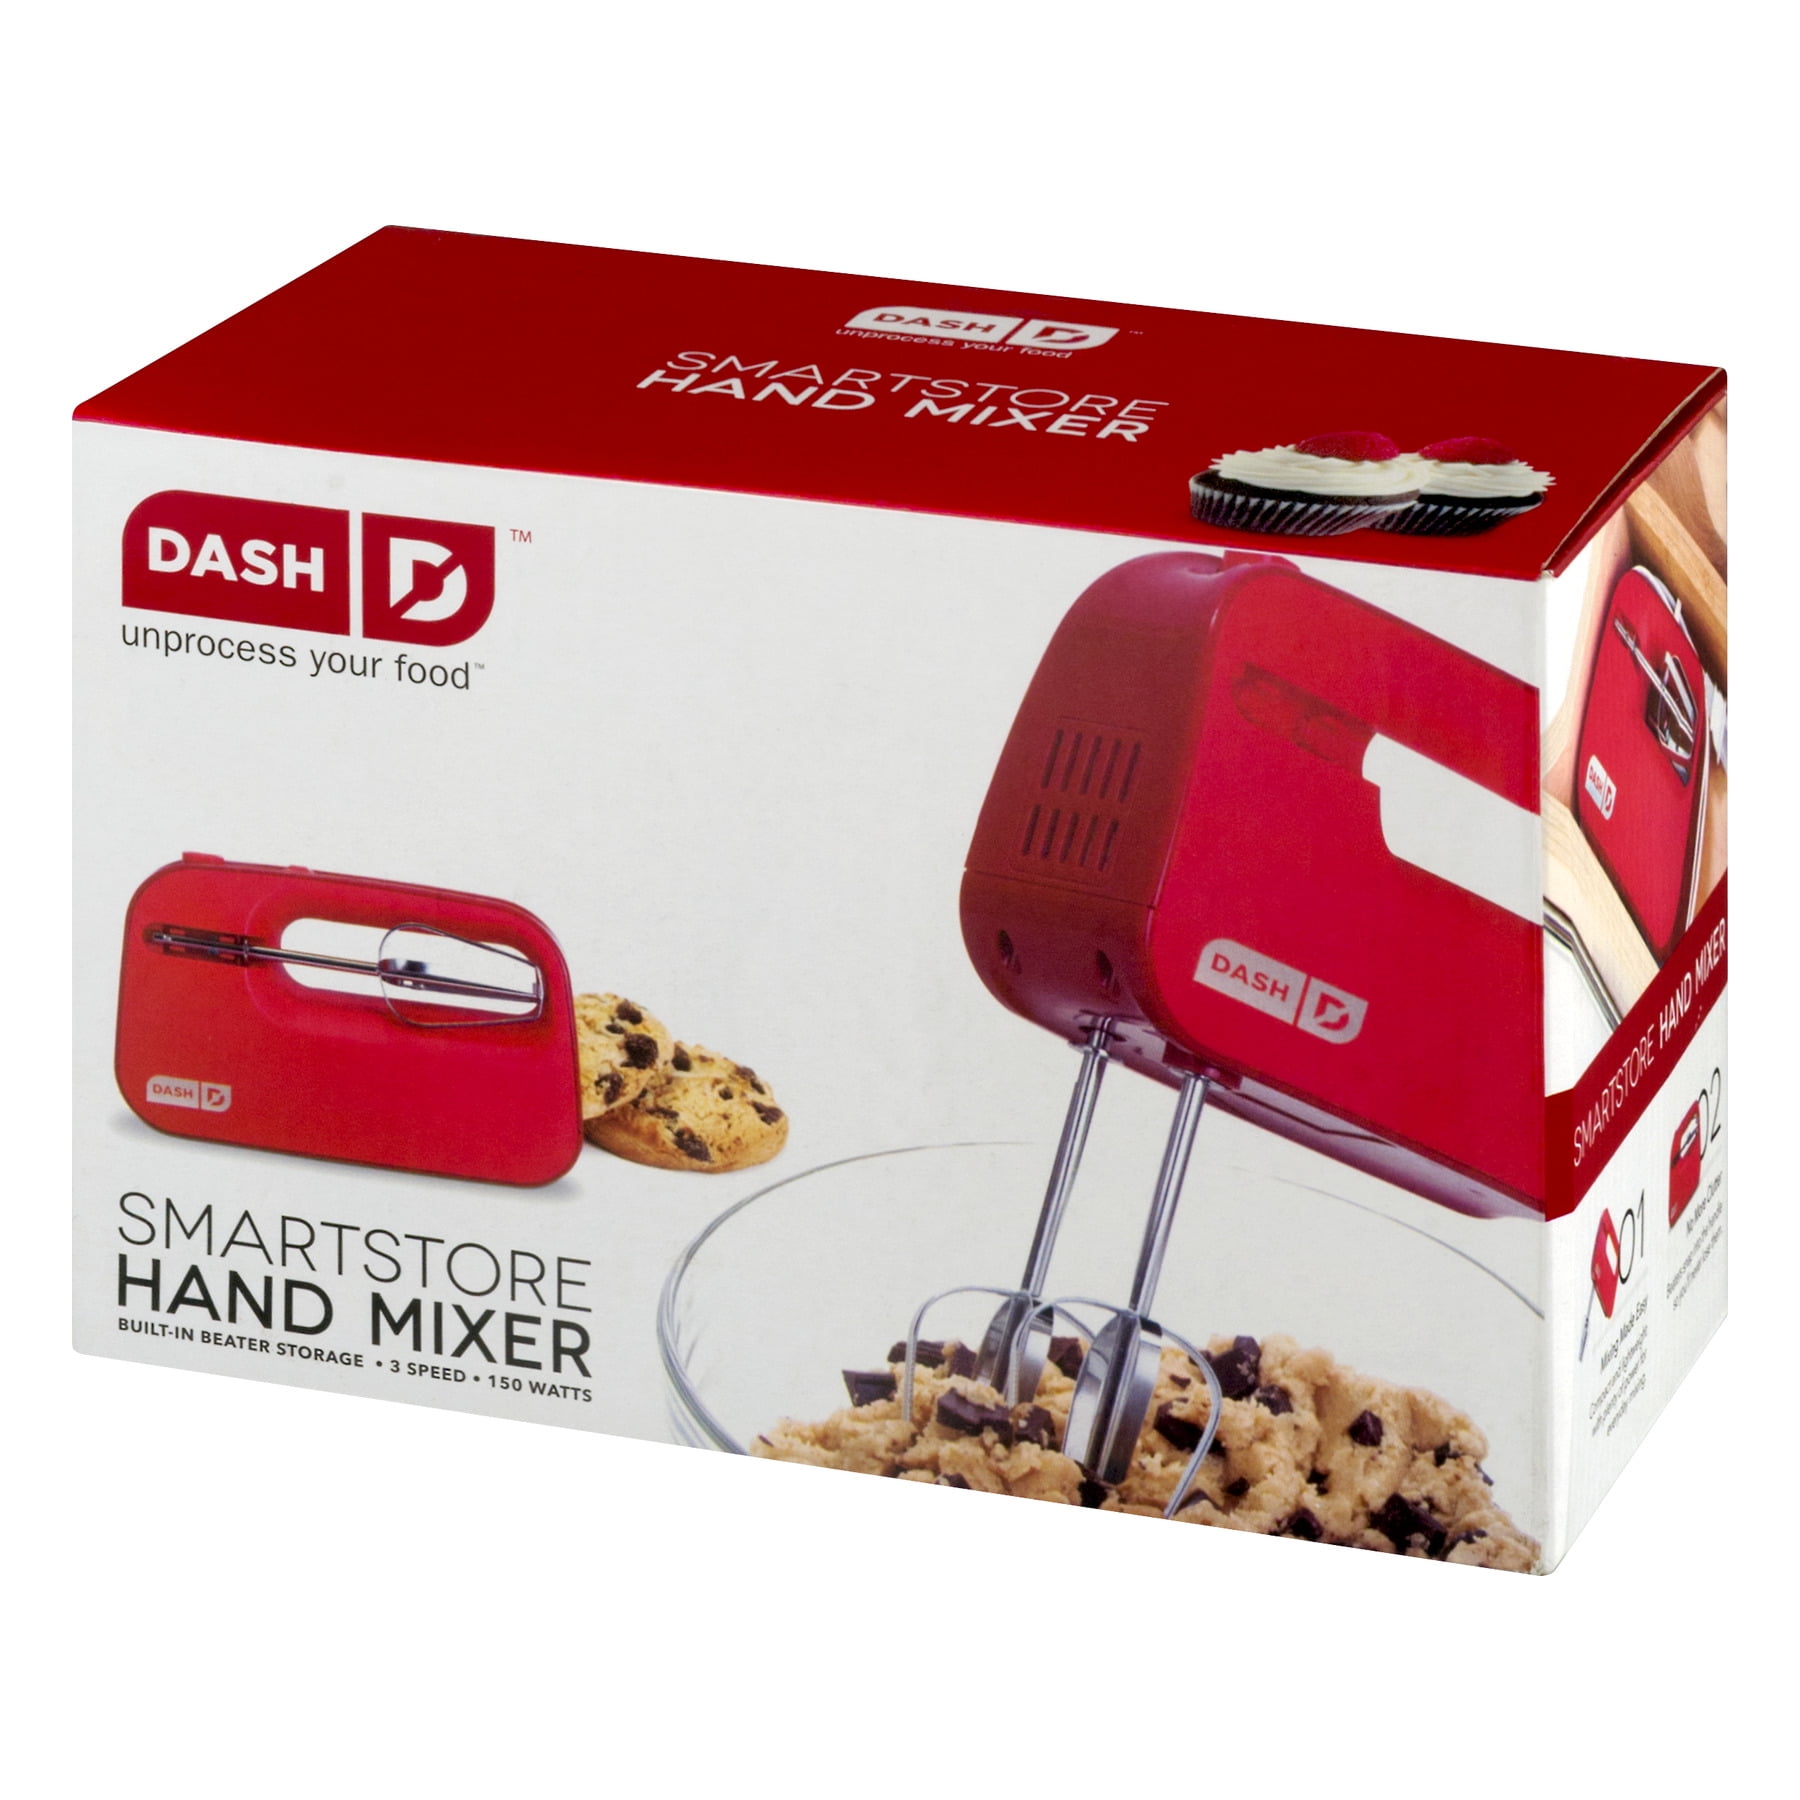 Dash's SmartStore Deluxe Electric Hand Mixer includes a milkshake